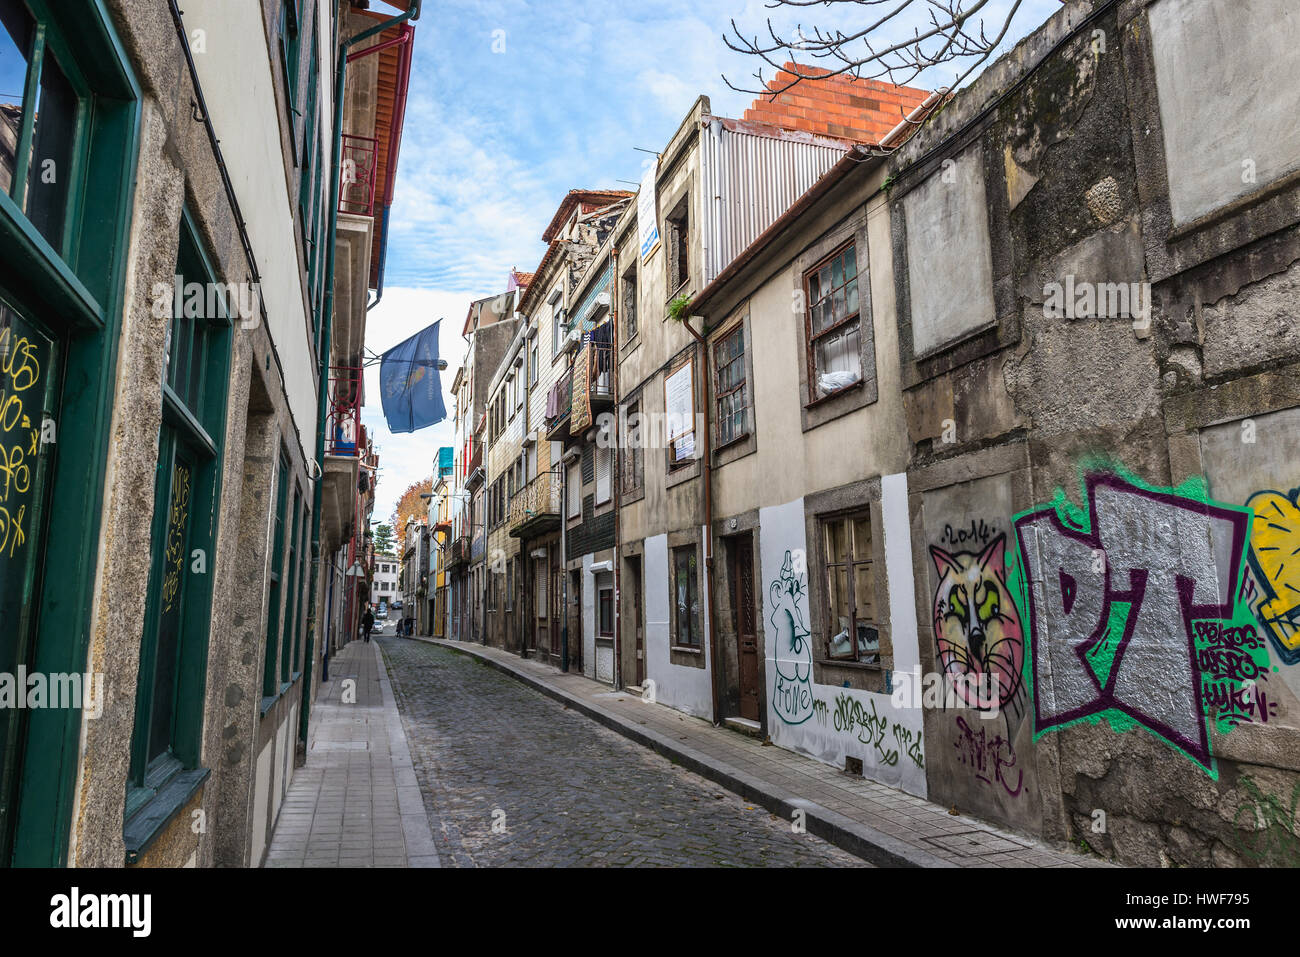 Maisons de la vieille ville sur une rue étroite Rua do Pinheiro (Pine Tree Street) dans la ville de Porto sur la péninsule ibérique, deuxième plus grande ville du Portugal Banque D'Images